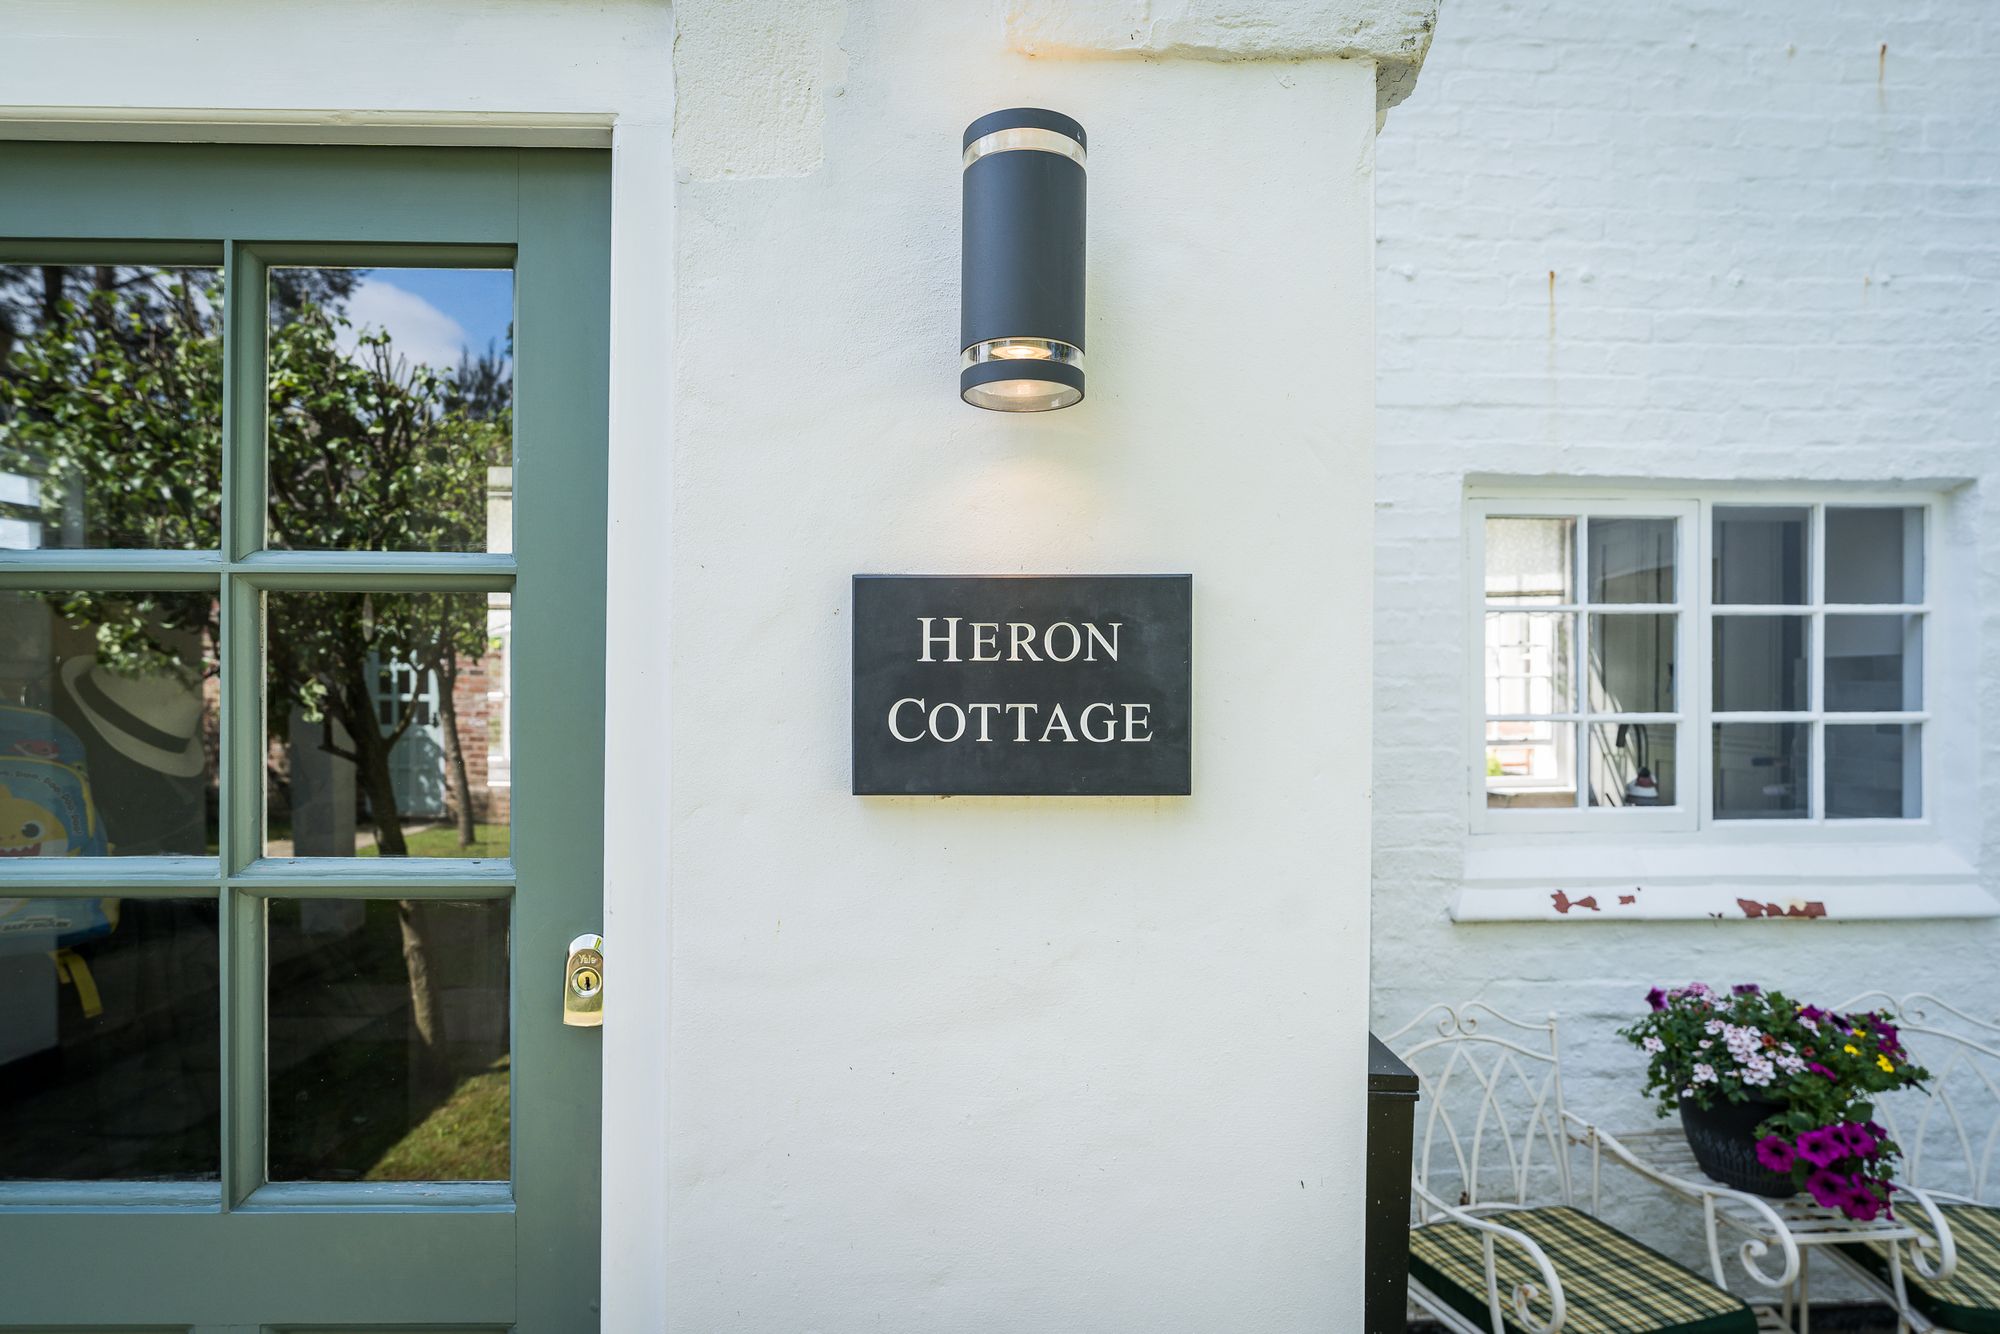 Heron Cottage Hobb Lane, Warrington